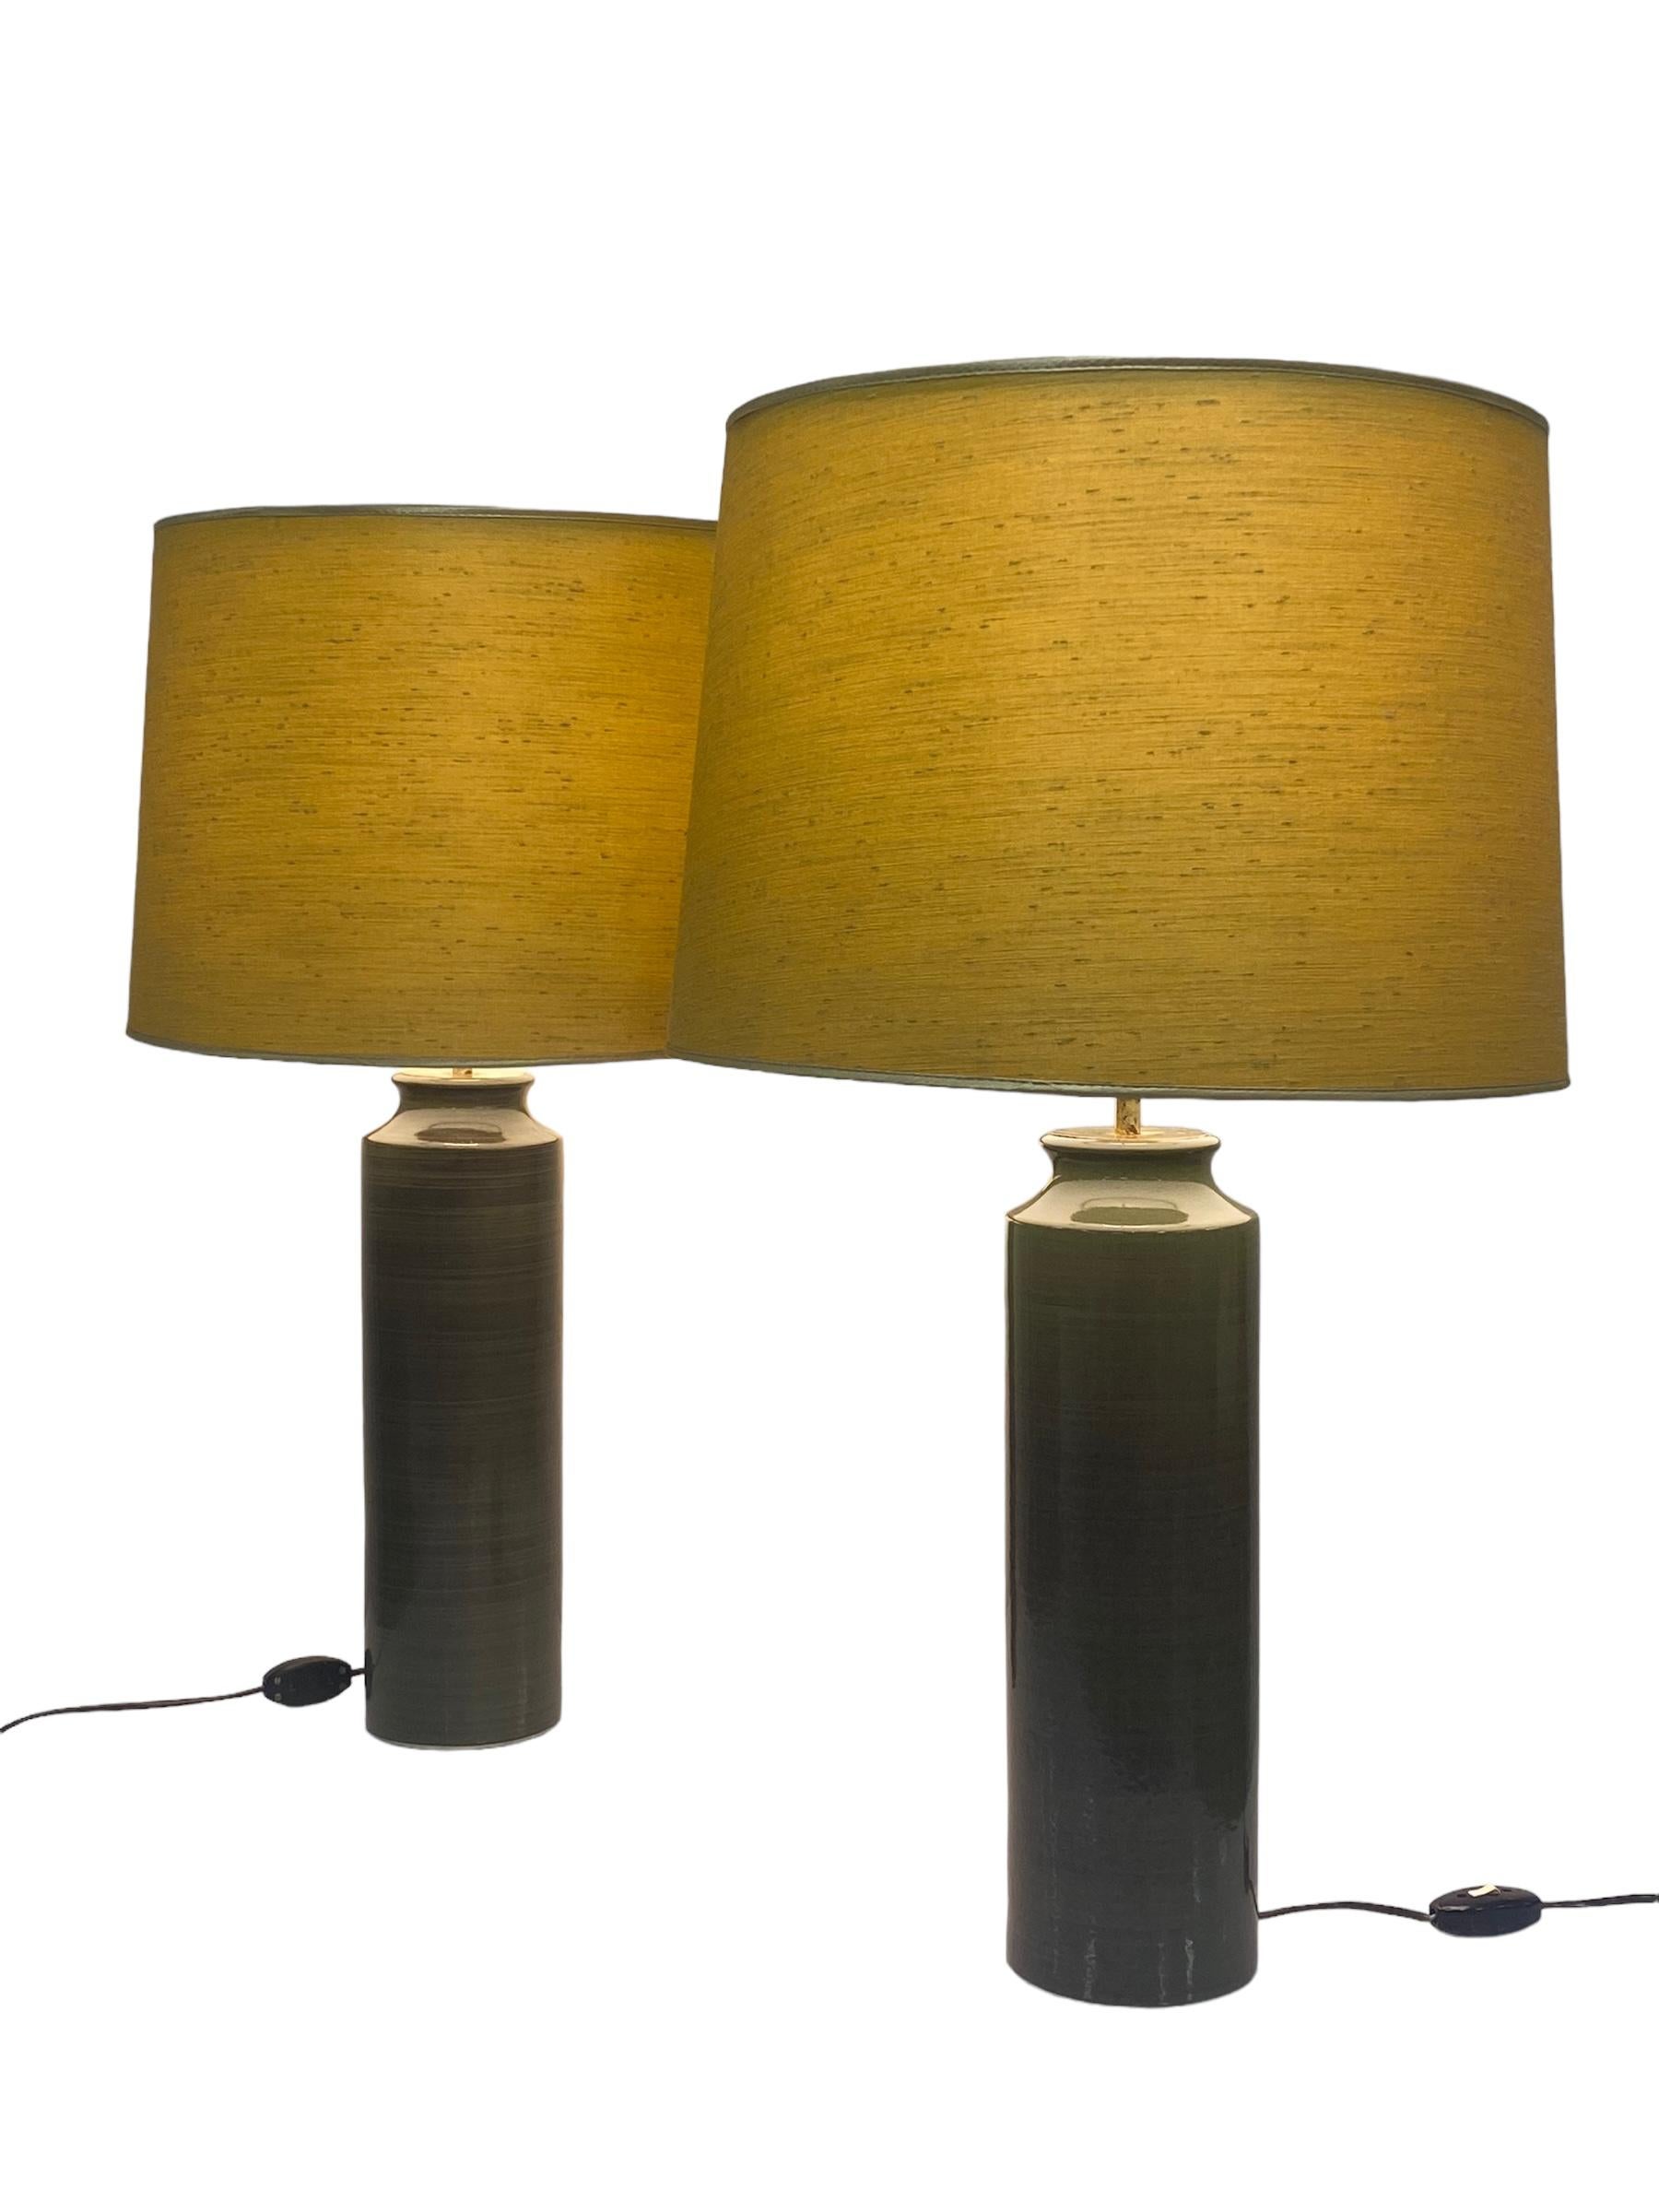 Paire de lampes de table majestueuses conçues par Gunvor Design/One pour Arabia dans les années 1950. Les lampes sont très grandes et distinctes. Avec un pied en céramique verdâtre et des abat-jours en tissu jaune. Les deux lampes sont marquées